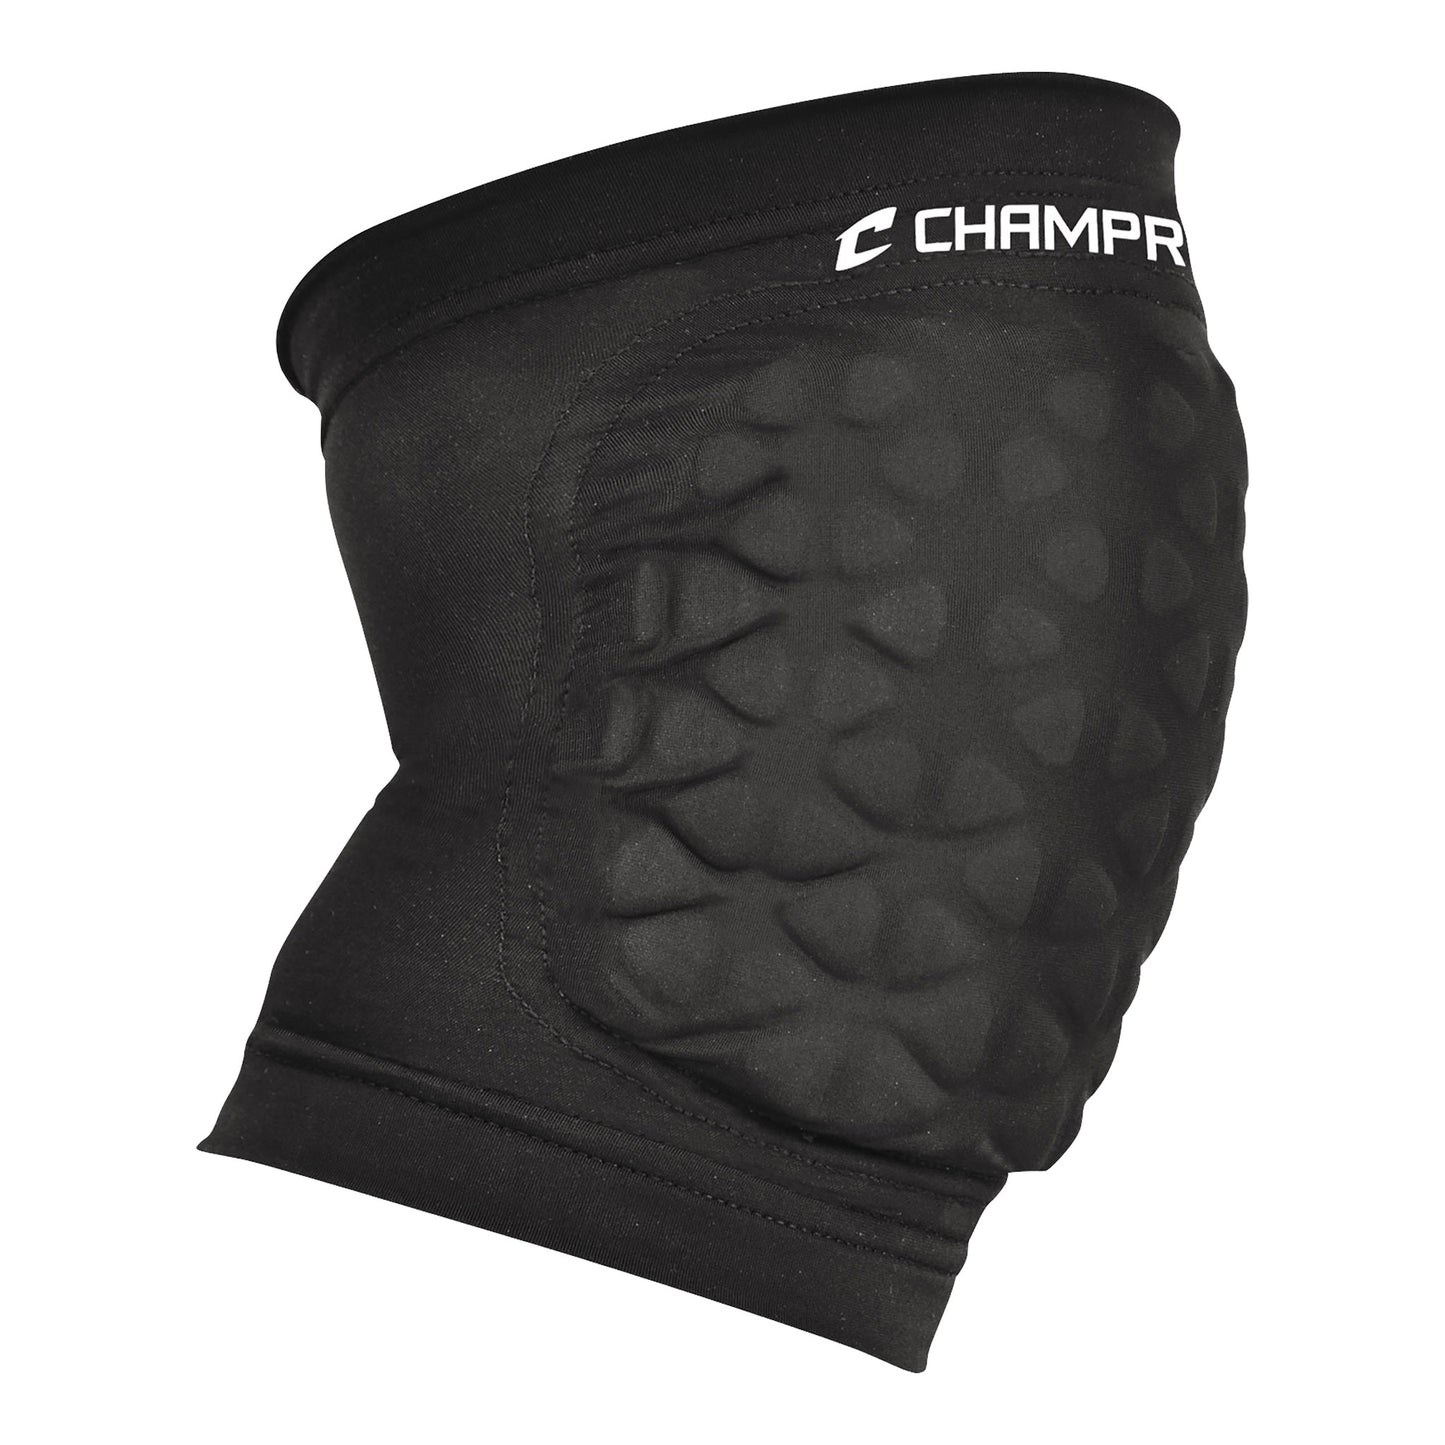 Champro Tri-Flex Knee Pads